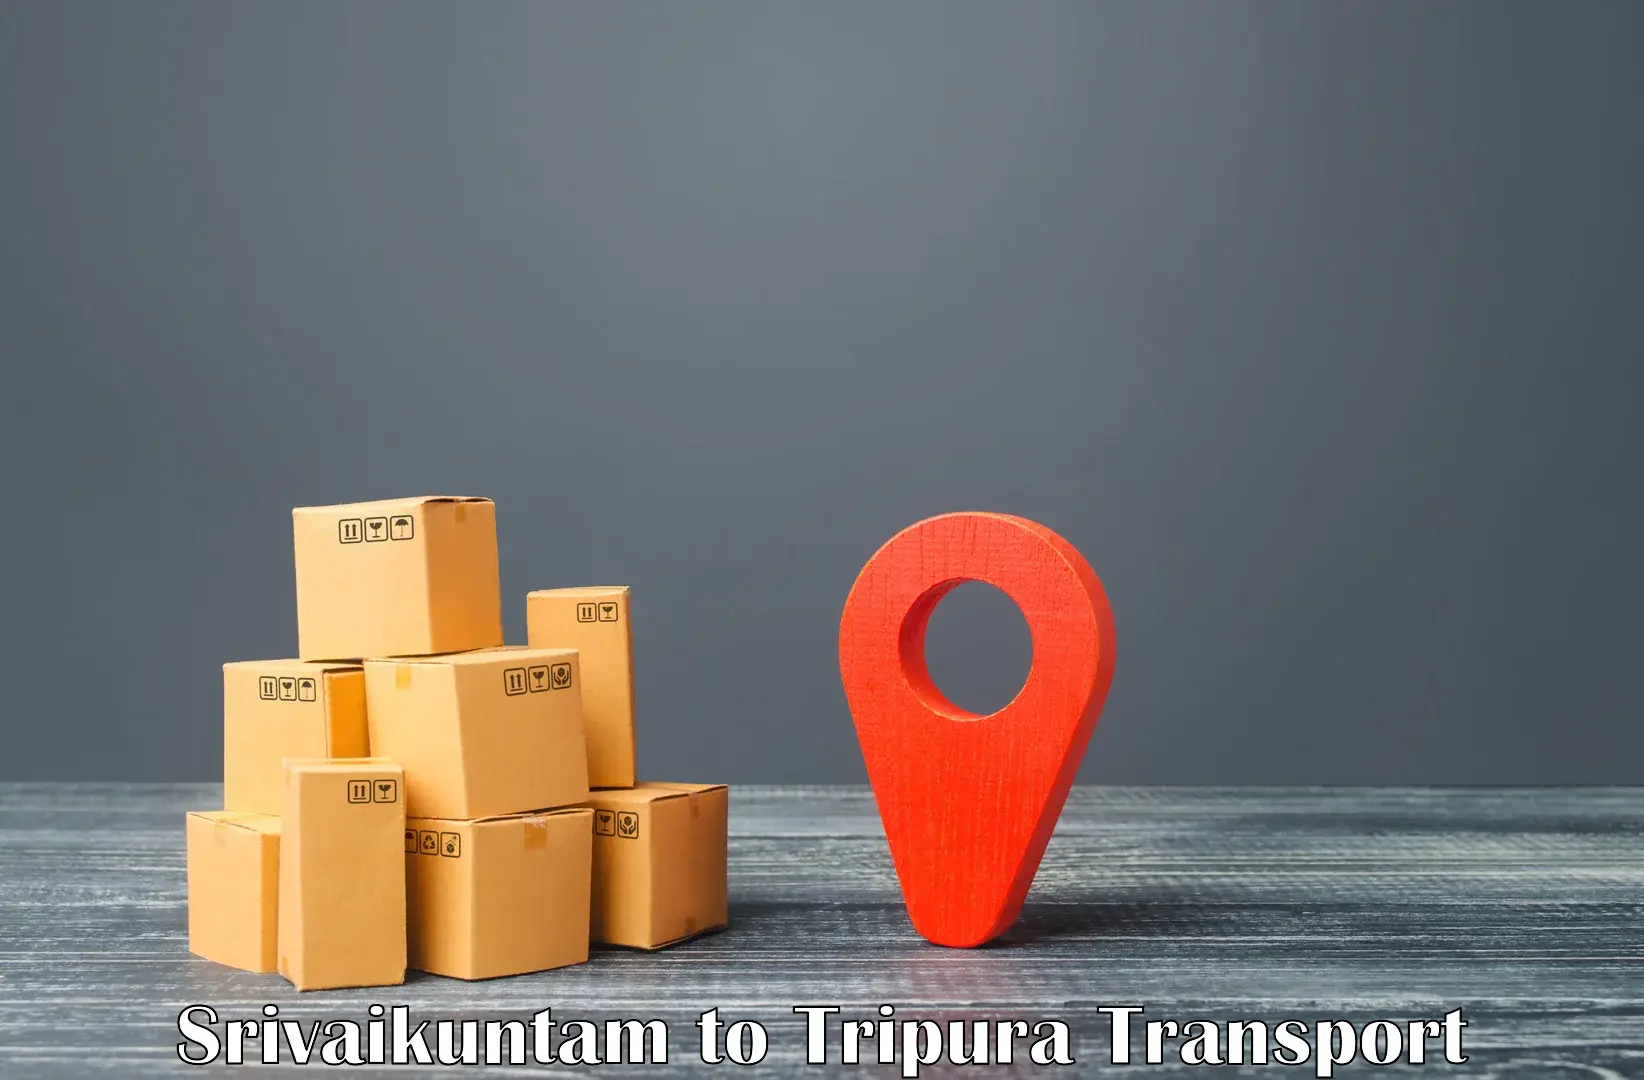 Transport in sharing in Srivaikuntam to North Tripura